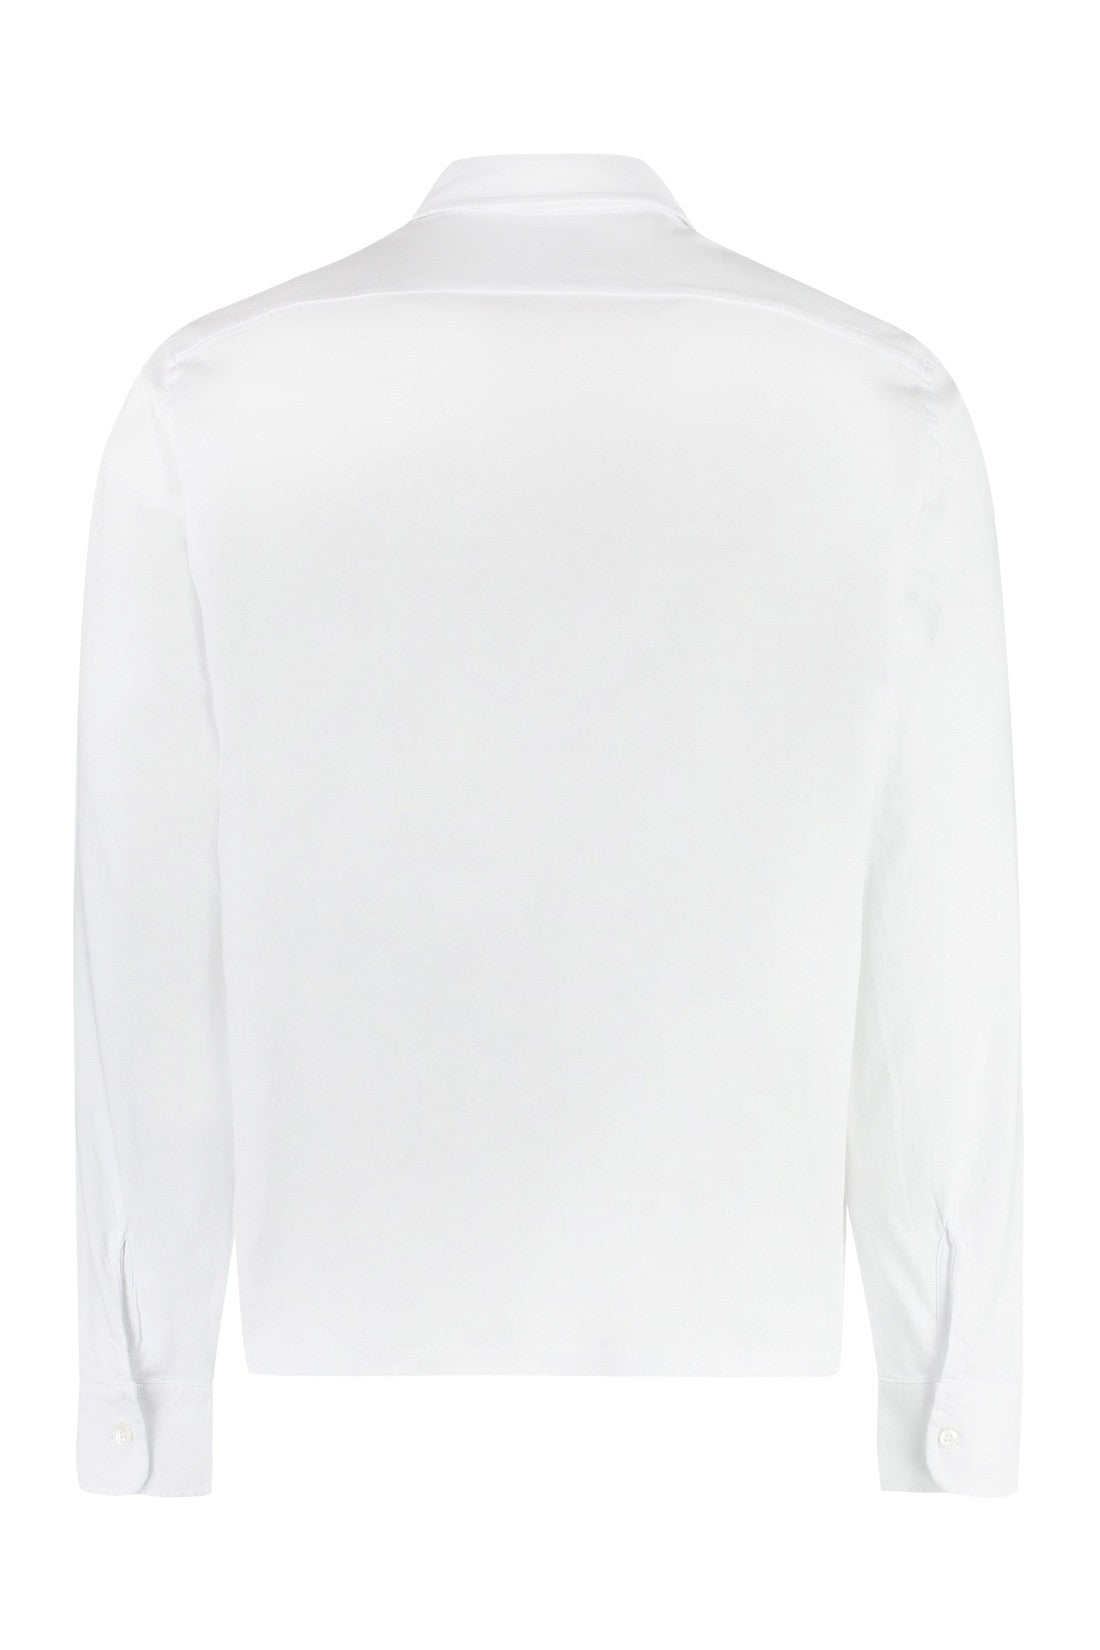 Aspesi-OUTLET-SALE-Cotton shirt-ARCHIVIST